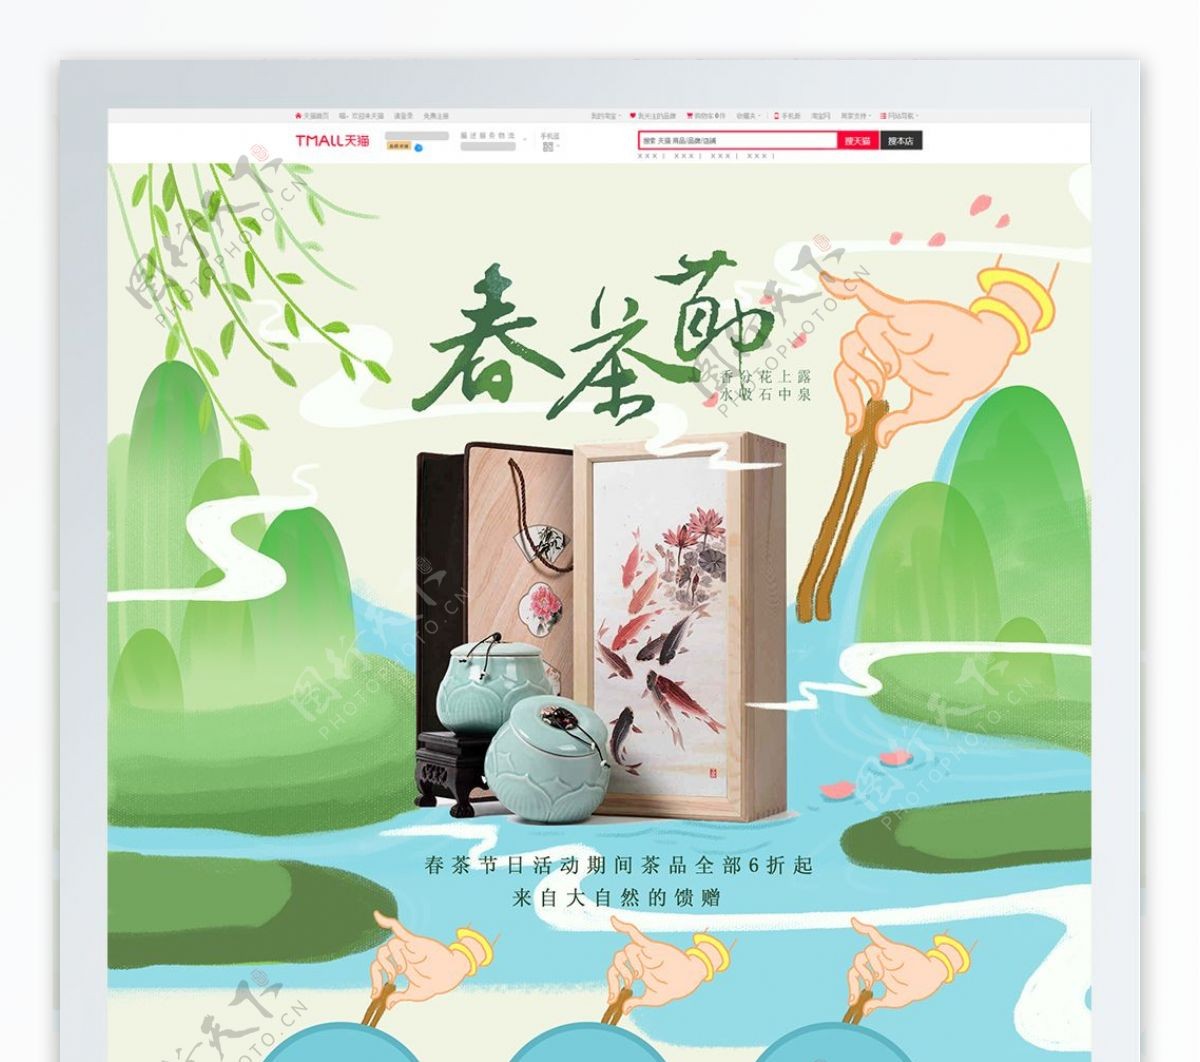 春茶节手绘插画传统古风清新首页模版